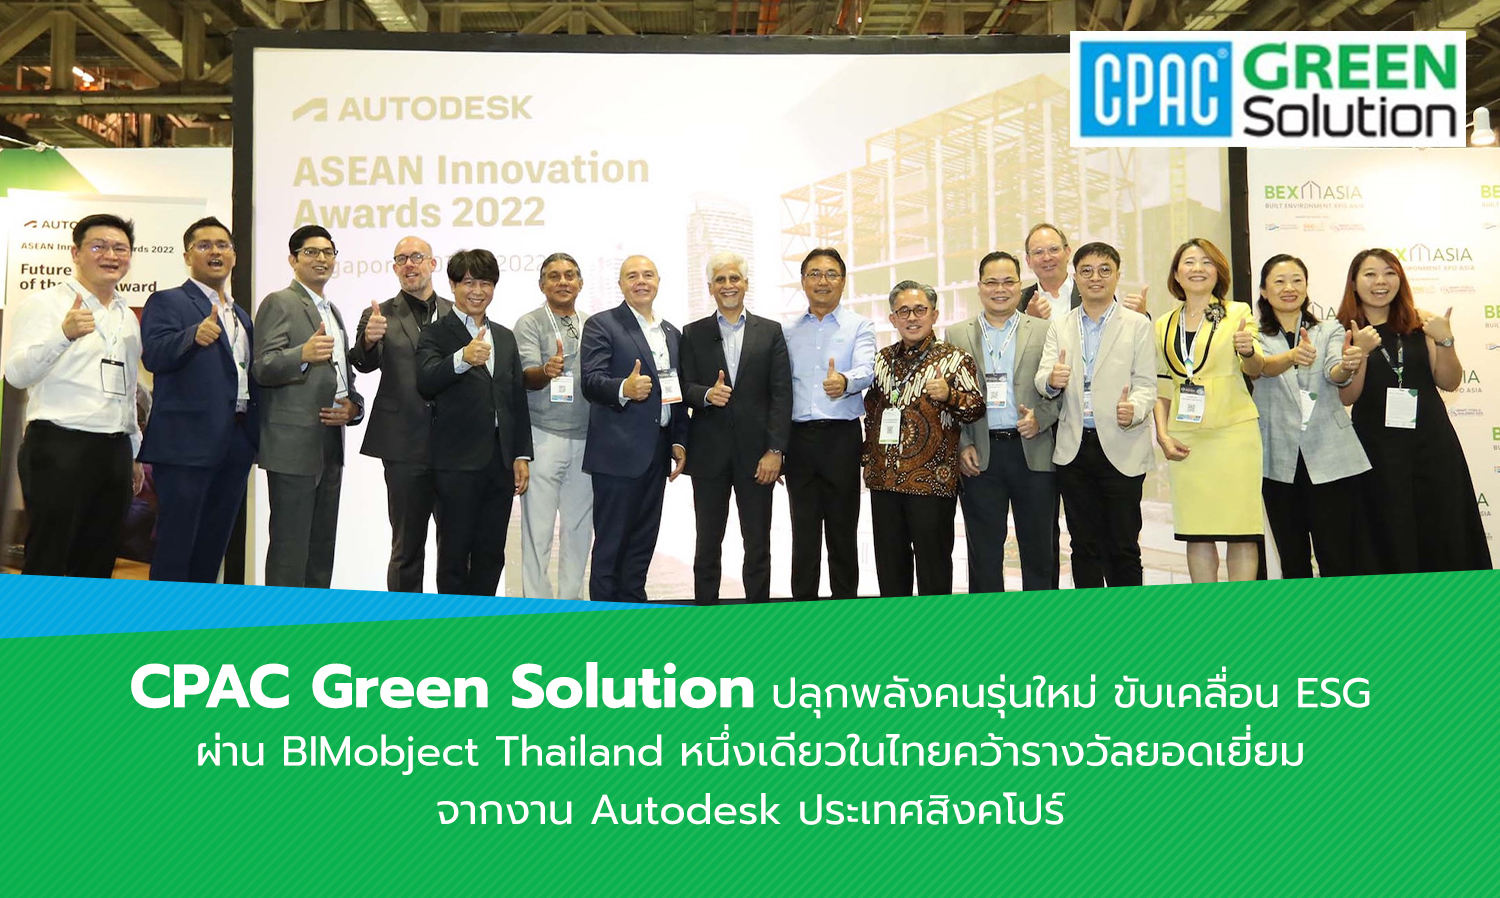 cpac-green-solution-ปลุกพลังคนรุ่นใหม่-ขับเคลื่-